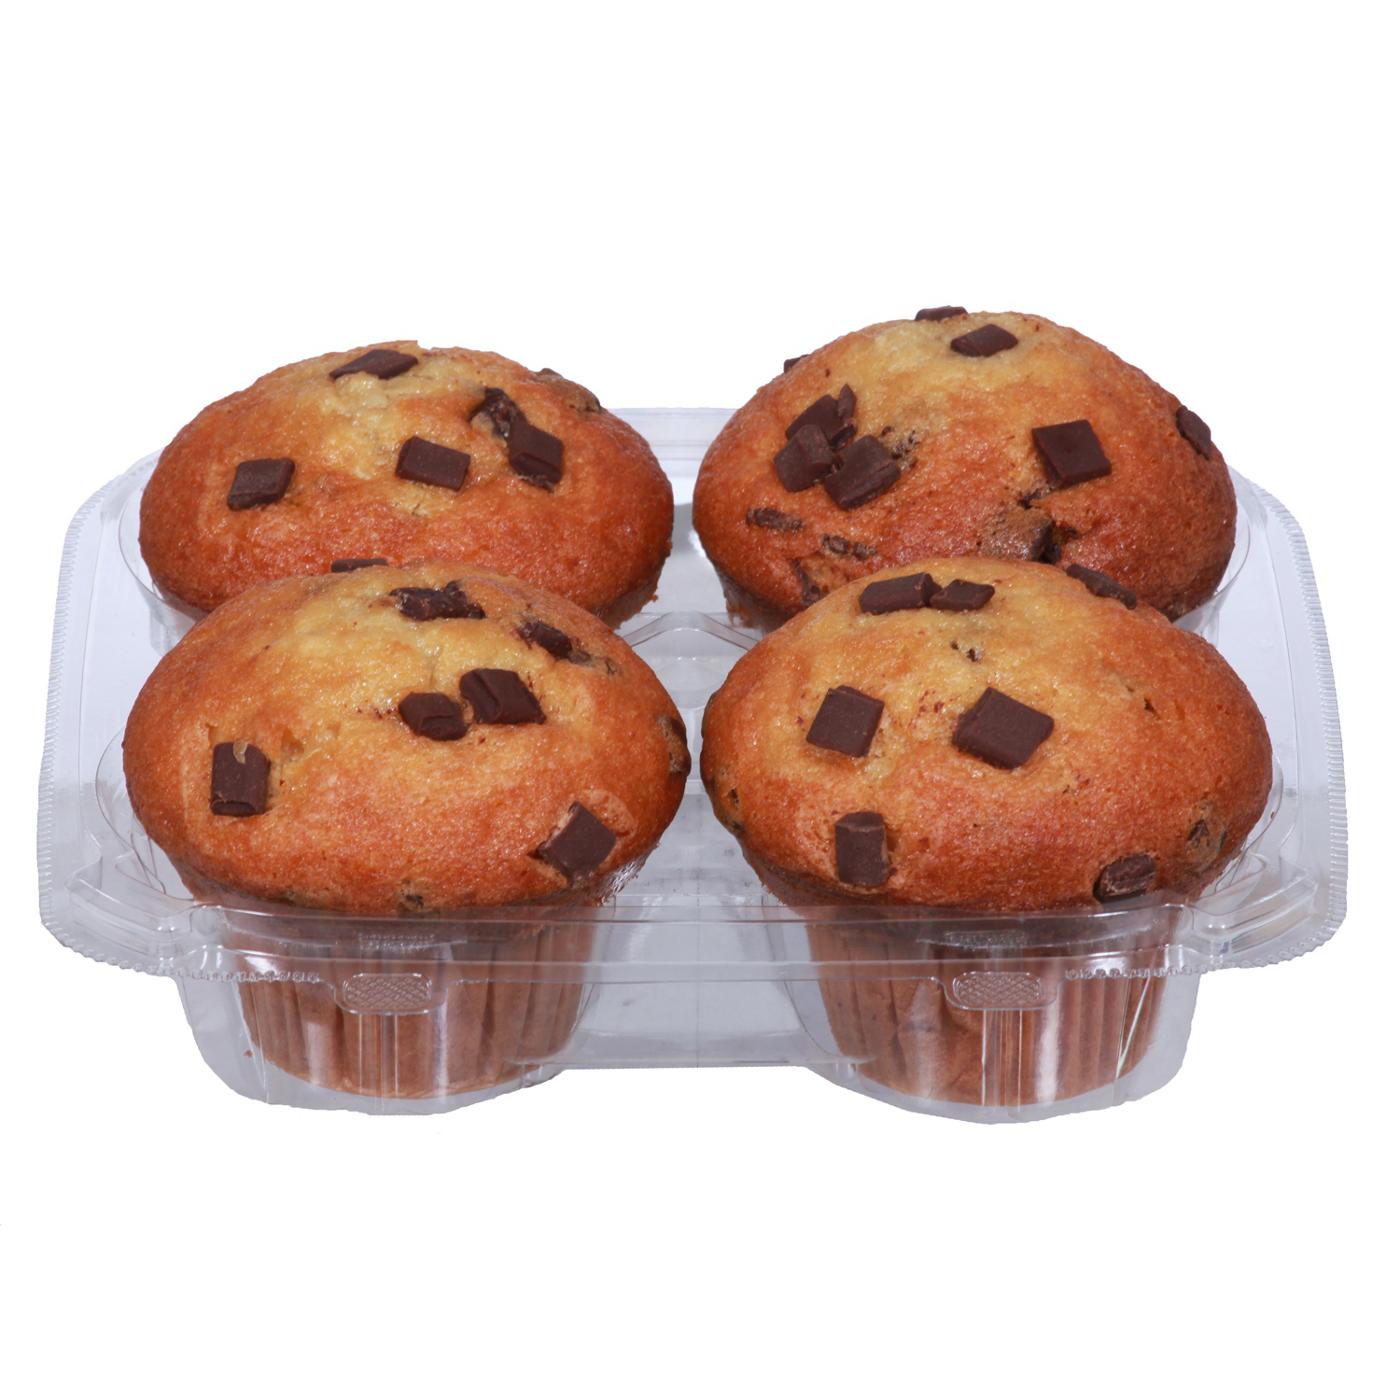 H-E-B Bakery Chocolate Chunk Muffins; image 1 of 2